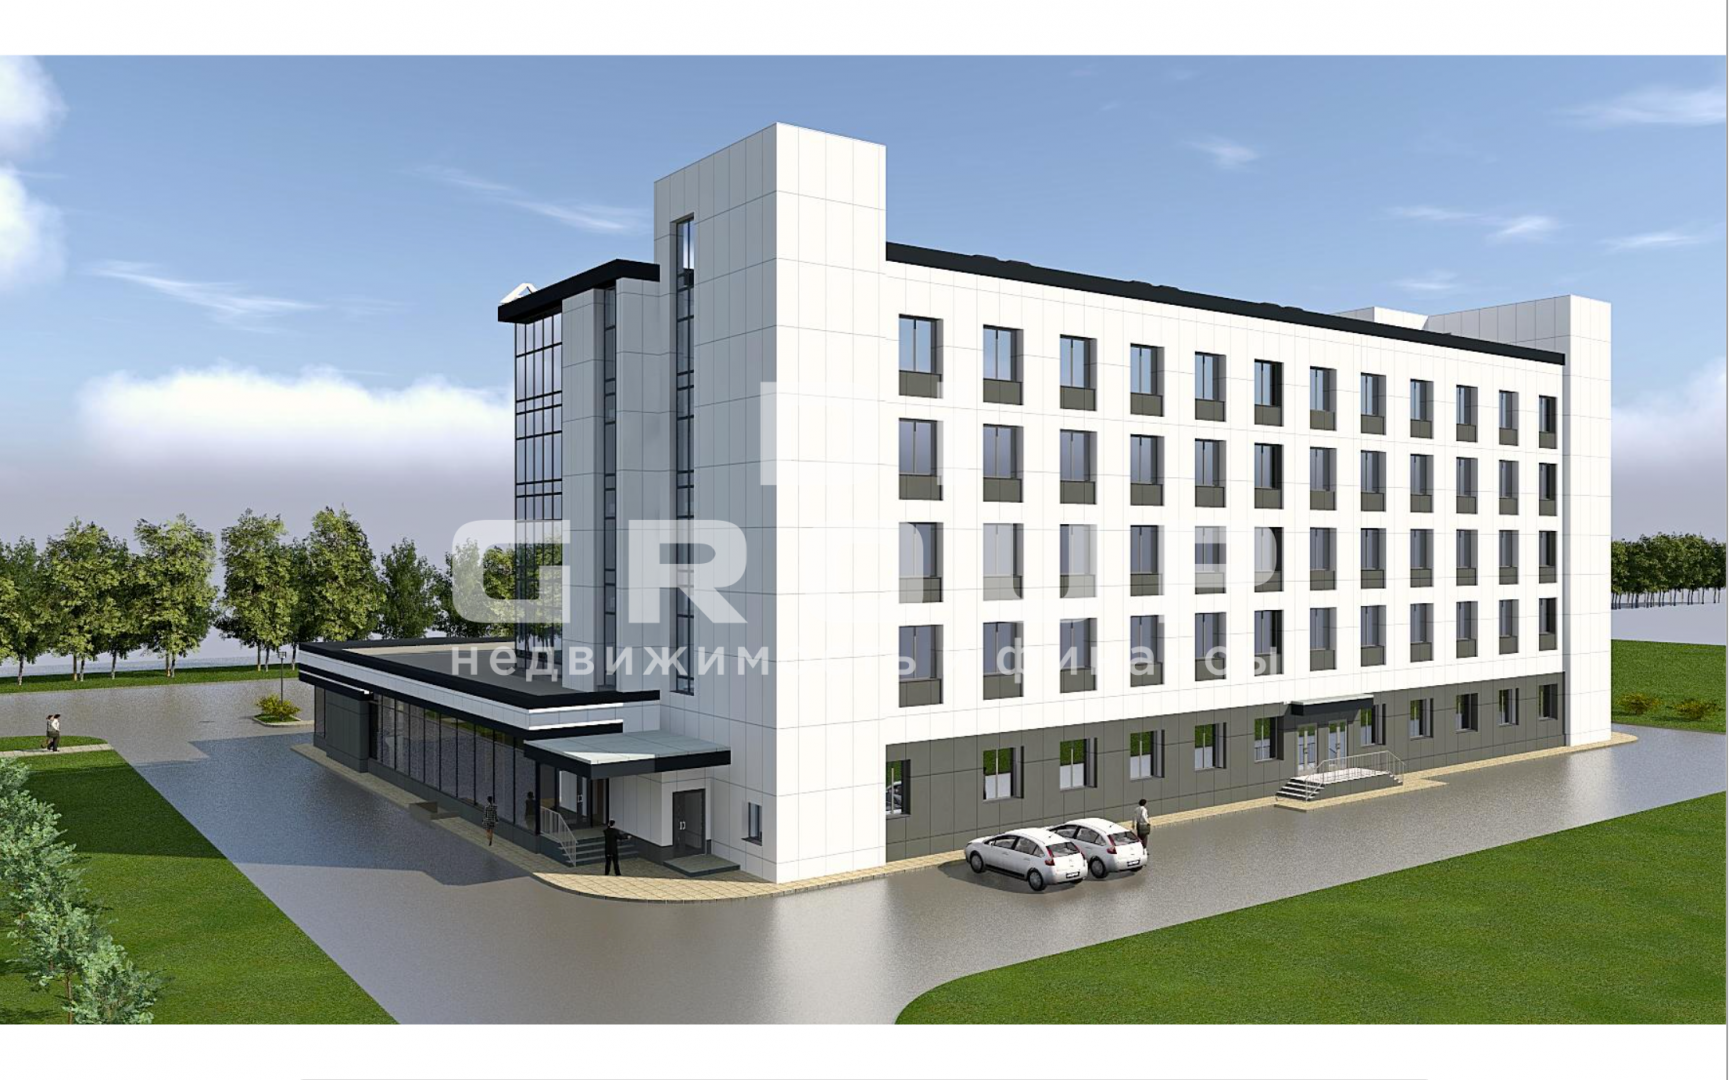 Продается строящаяся гостиница в Республике Татарстан, город Нижнекамск.  Объект площадью 6 500 кв.м расположен в... - 1